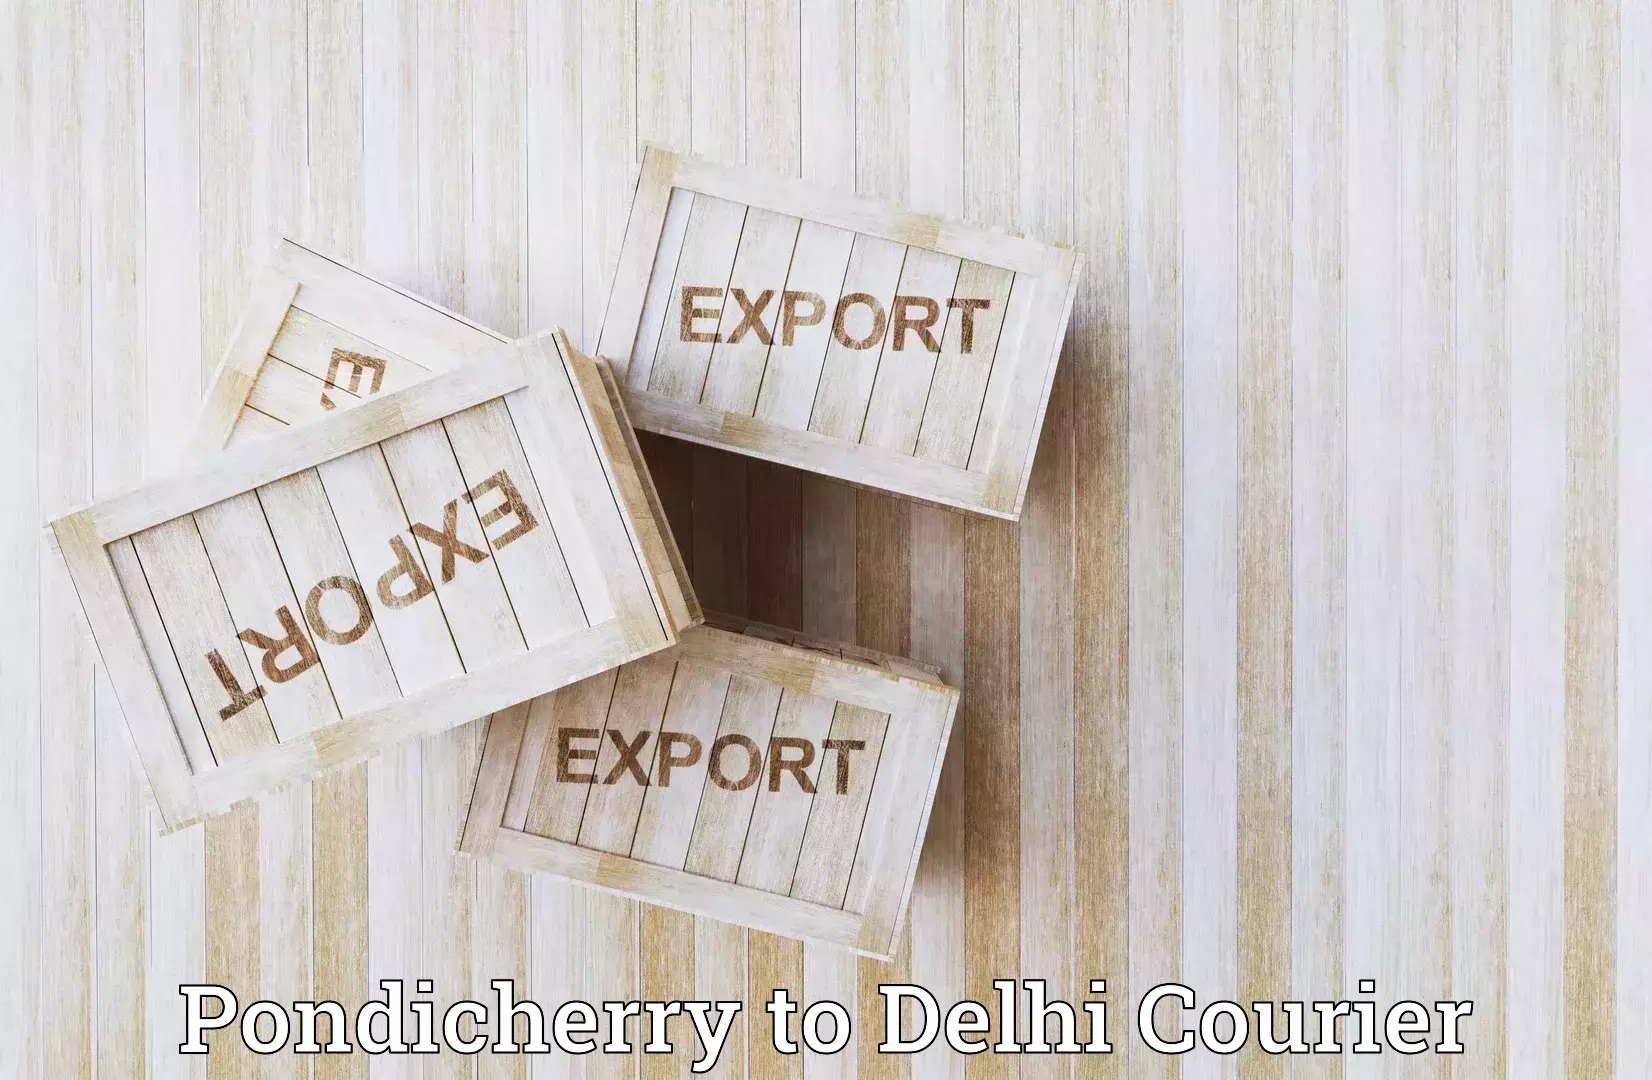 Global shipping solutions Pondicherry to Jawaharlal Nehru University New Delhi